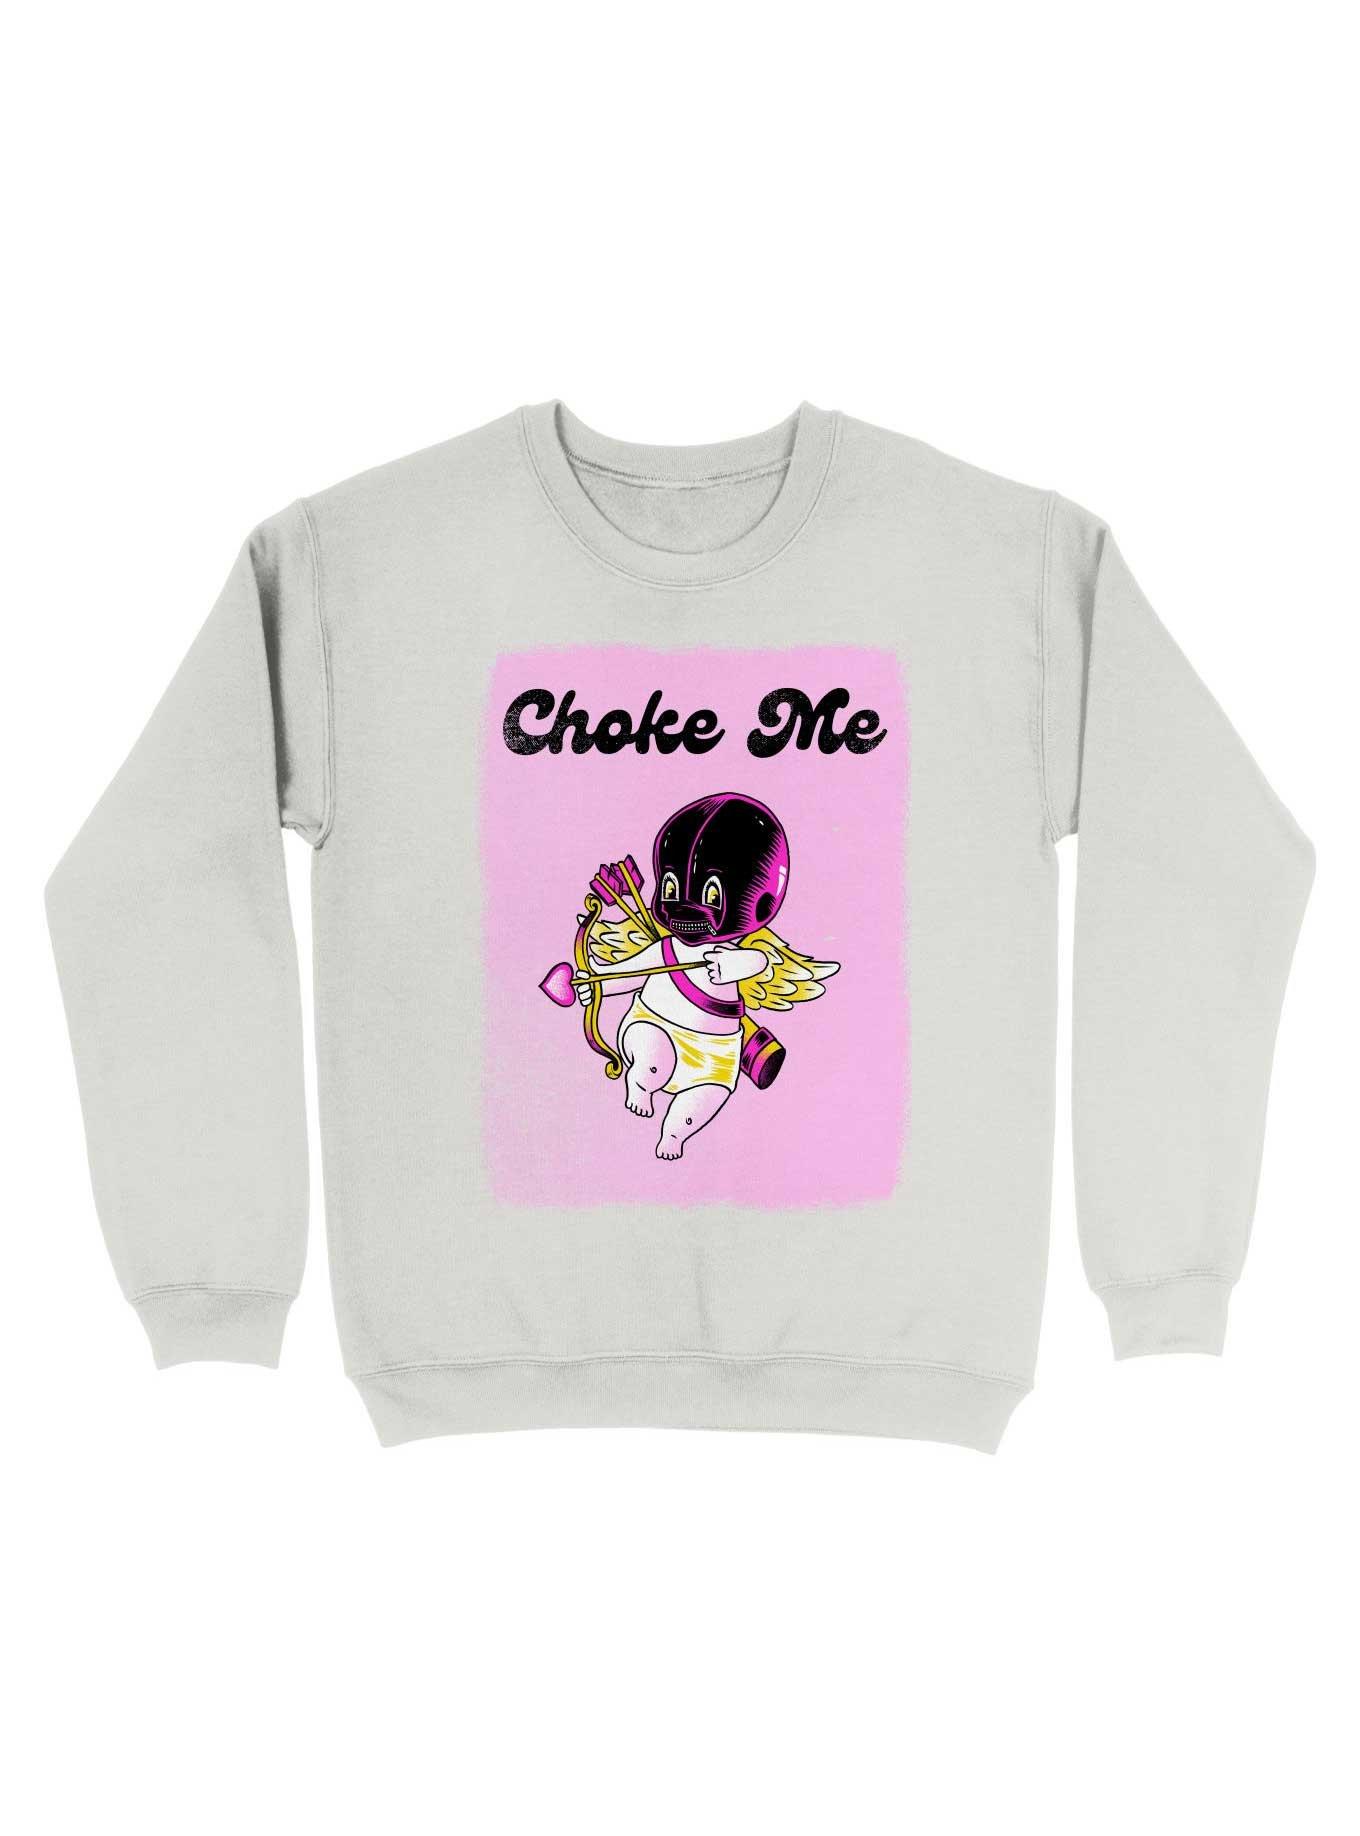 Choke Me Sweatshirt